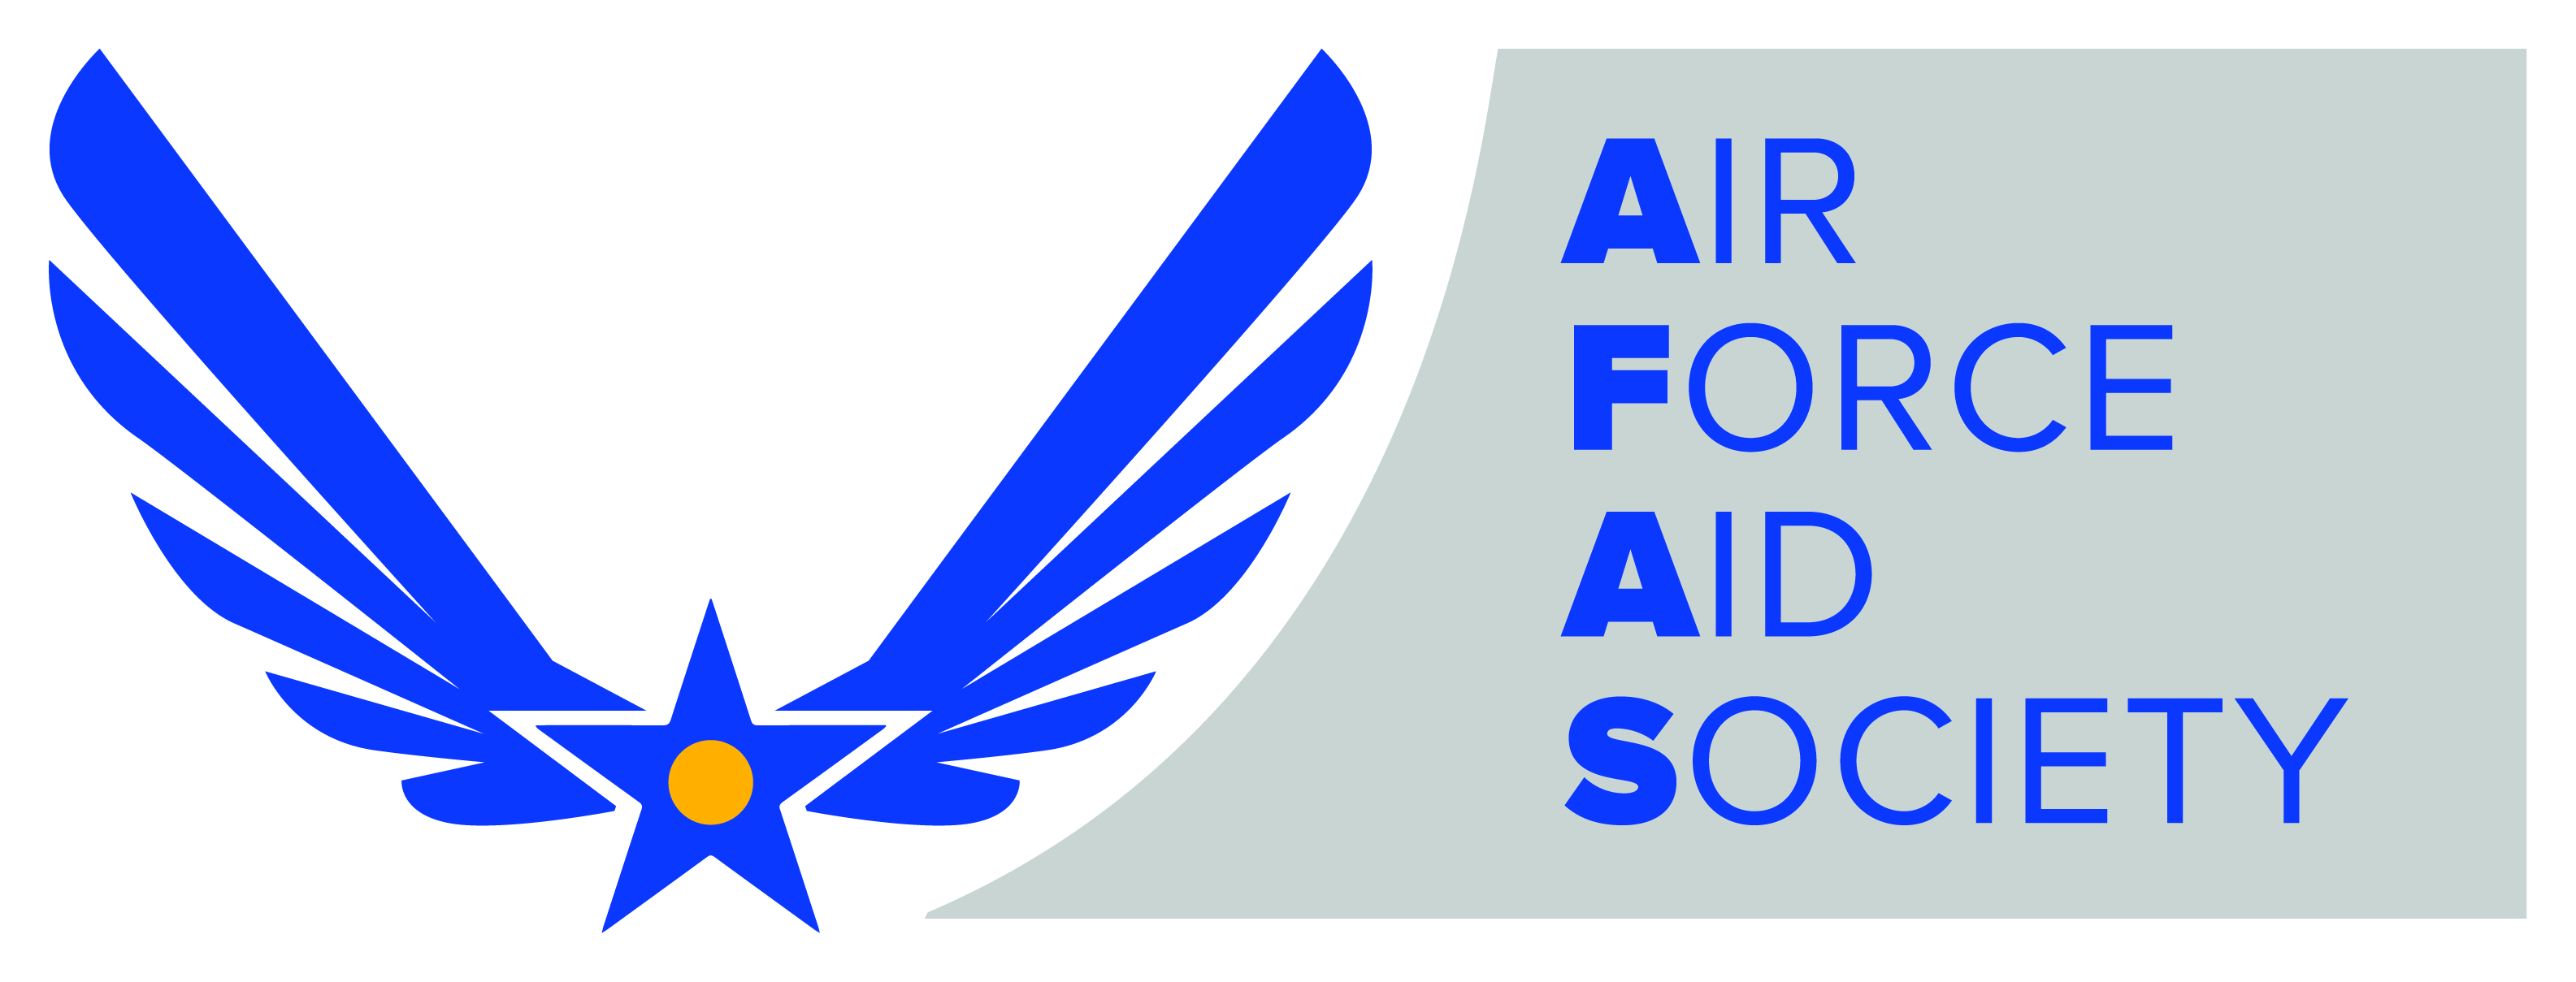 AIR FORCE AID SOCIET